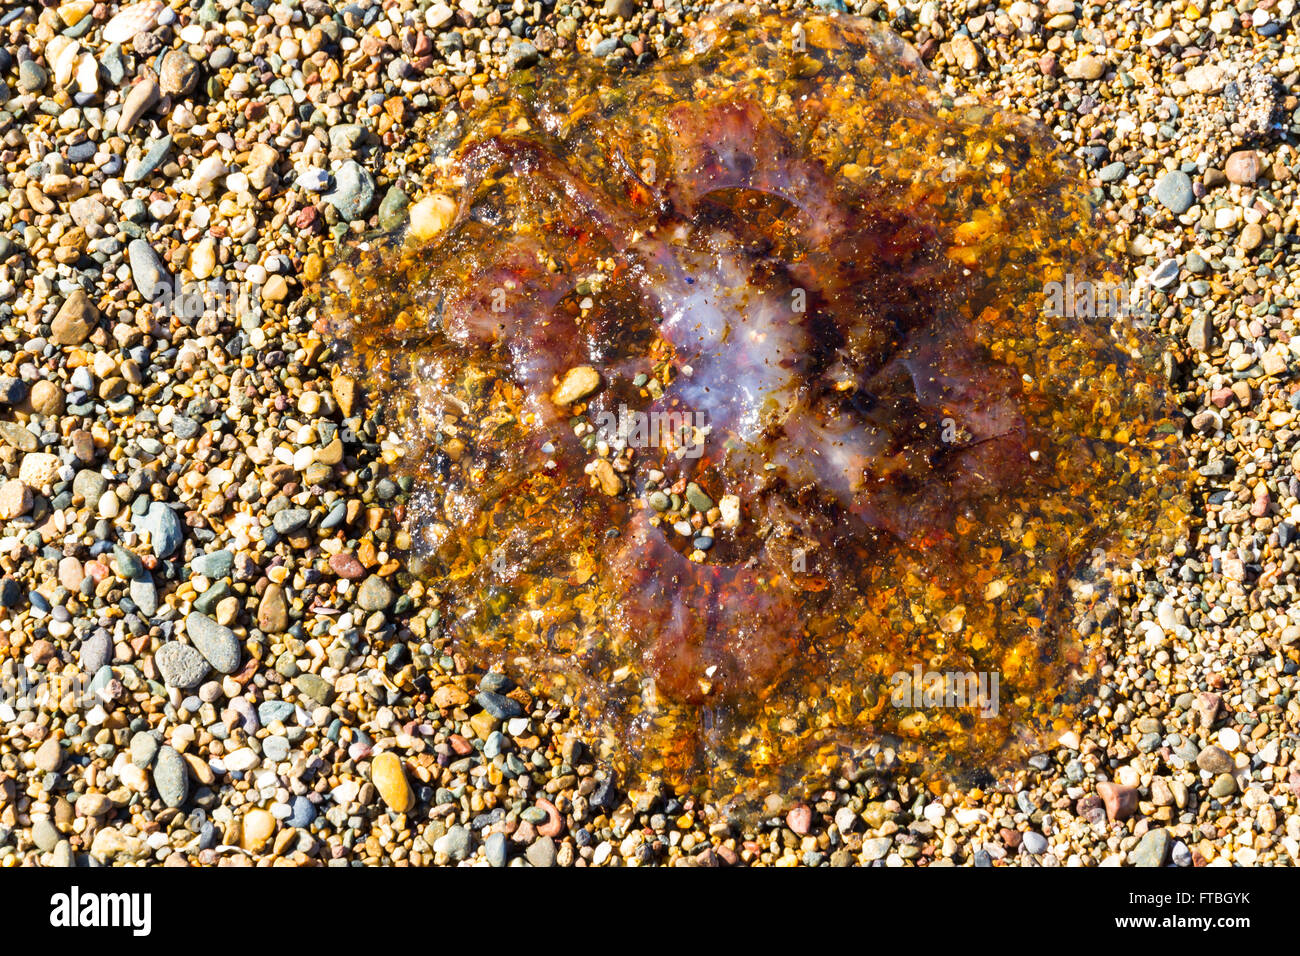 Medusas u jellie, parte de los cnidarios se lavan en Pebble Beach. Foto de stock